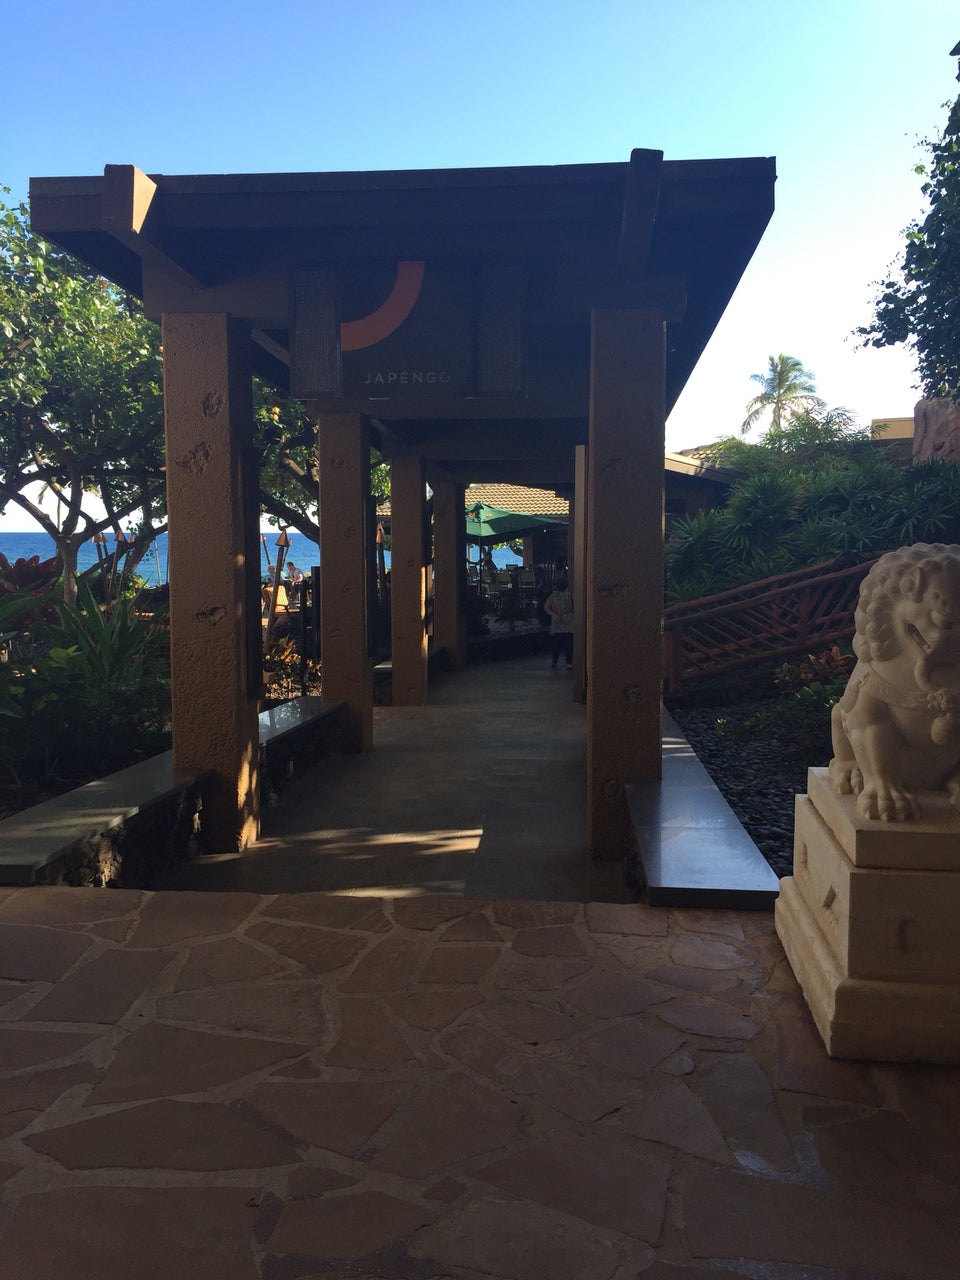 Photo of Hyatt Regency Maui Resort & Spa